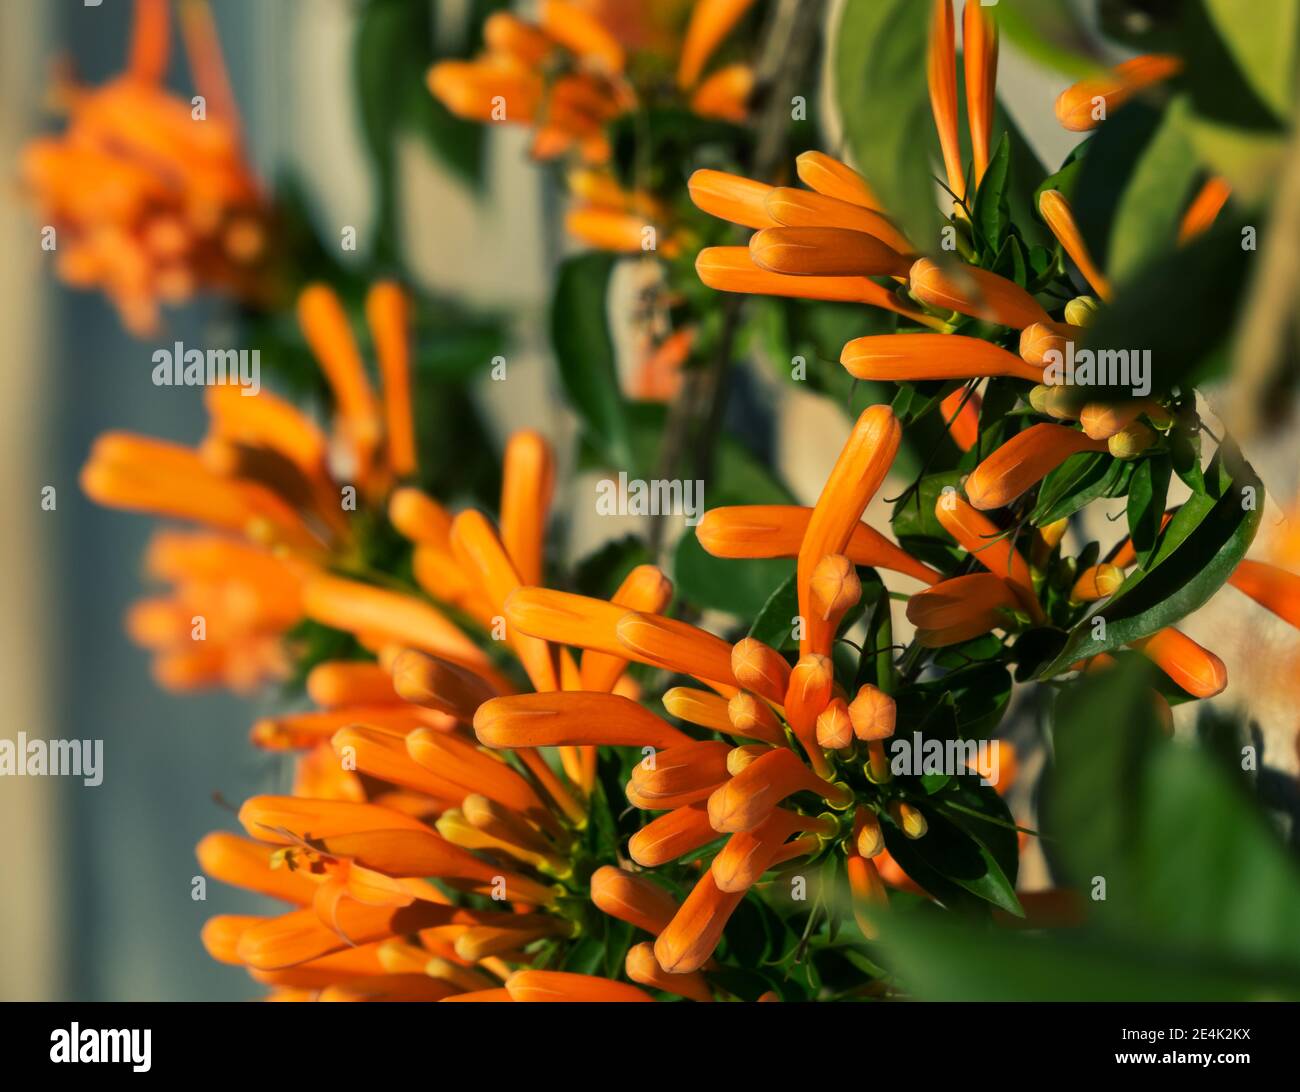 Fiori arancioni allungati della bignonia invernale (Pirostegia venusta), chiamati anche il fiore di San Juan o trombettiere d'arancio, illuminati dalla sera Foto Stock